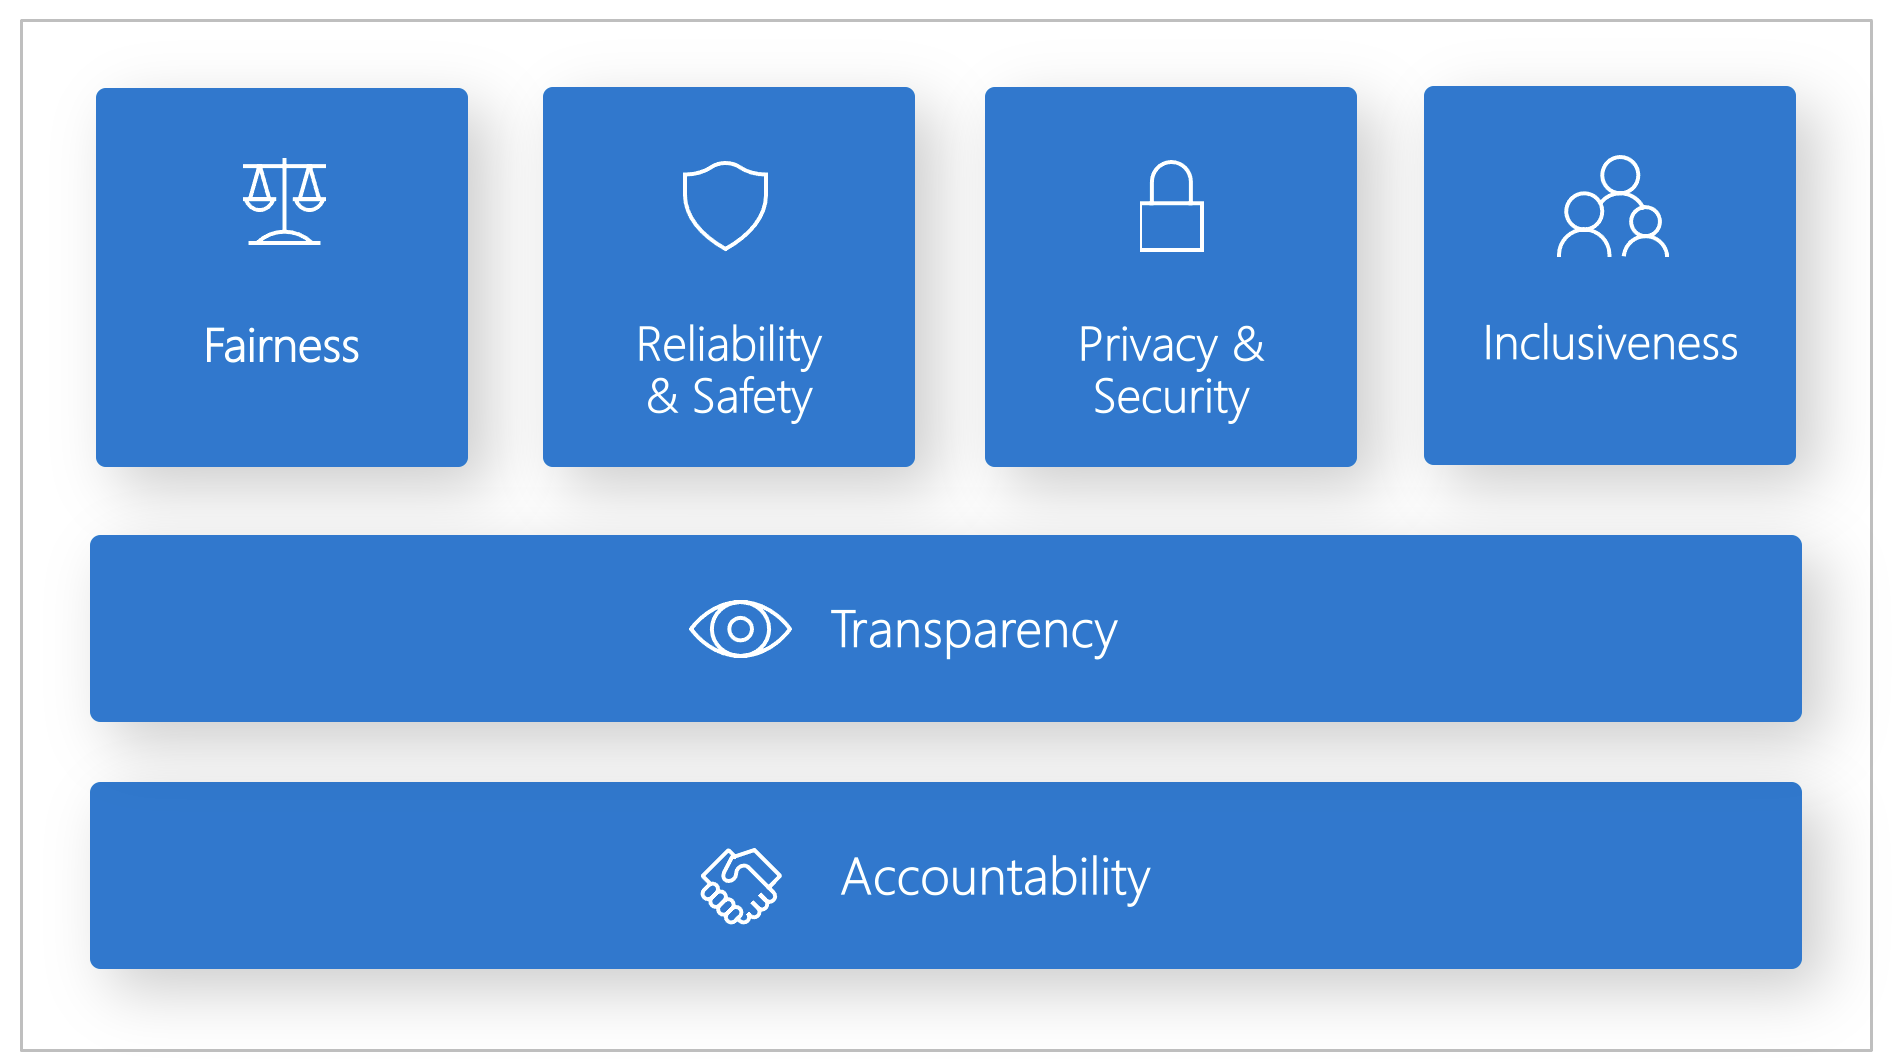  Diagram sześciu zasad odpowiedzialnej sztucznej inteligencji firmy Microsoft, które obejmują sprawiedliwość, niezawodność i bezpieczeństwo, prywatność i bezpieczeństwo, inkluzywność, przejrzystość i odpowiedzialność.